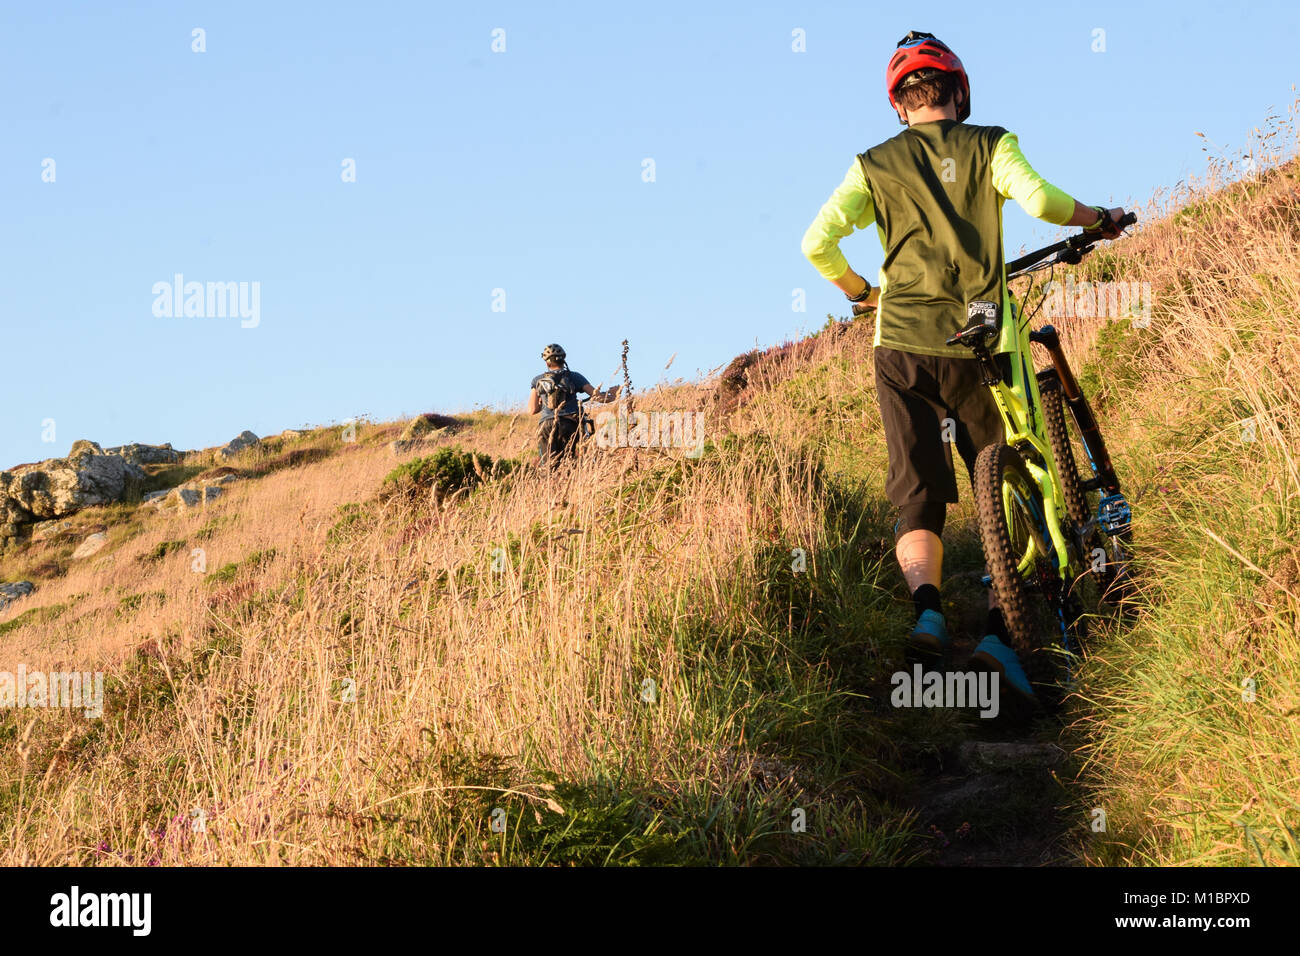 Jake Marsh Enduro Mountain Bike empujando hacia arriba, Gwenver, Sennen, Cornualles, en el REINO UNIDO Foto de stock